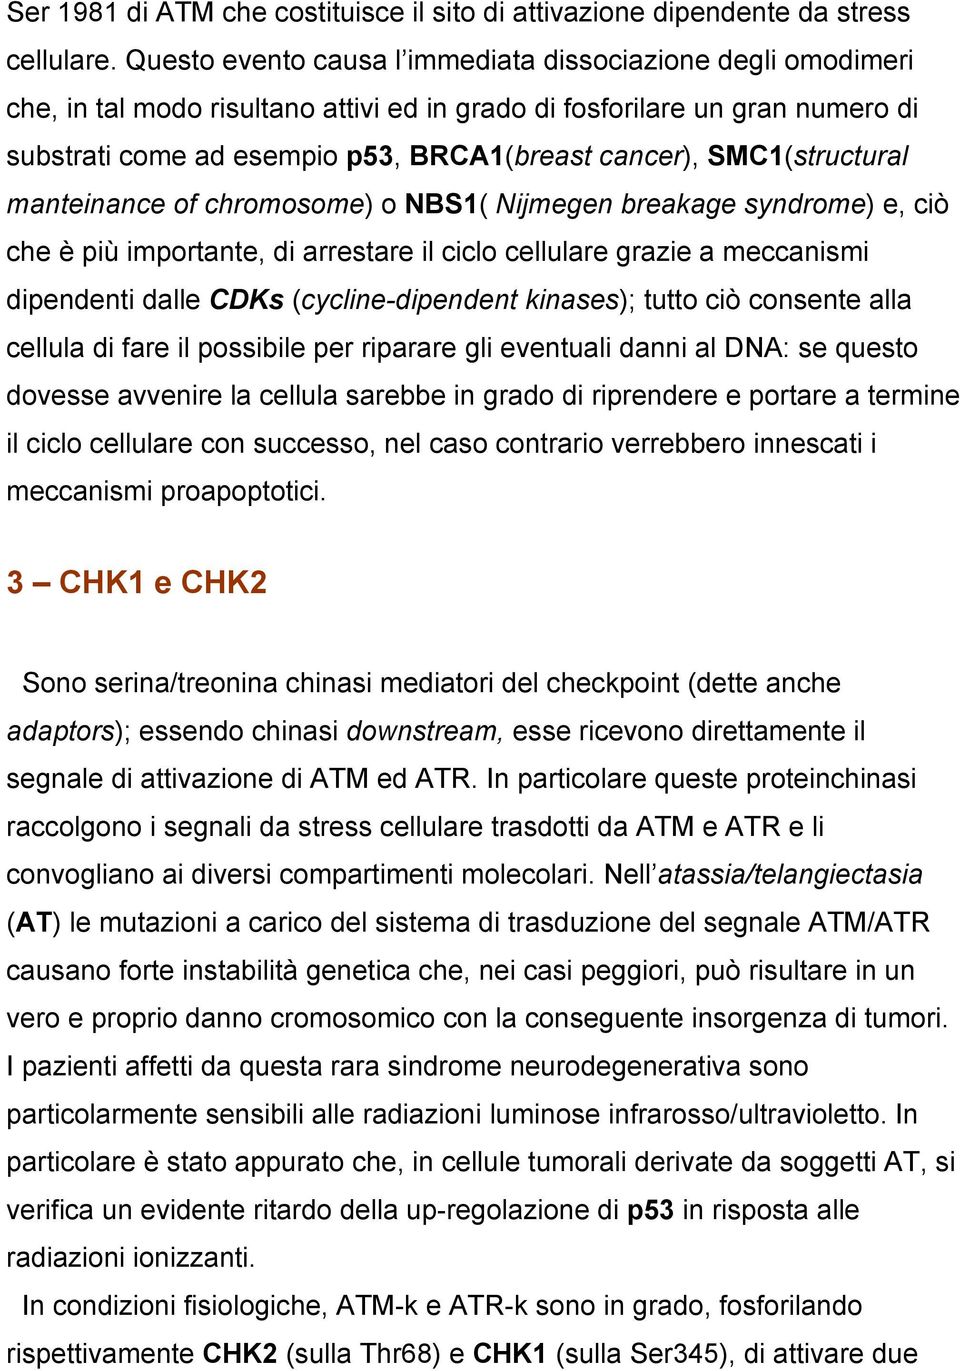 SMC1(structural manteinance of chromosome) o NBS1( Nijmegen breakage syndrome) e, ciò che è più importante, di arrestare il ciclo cellulare grazie a meccanismi dipendenti dalle CDKs